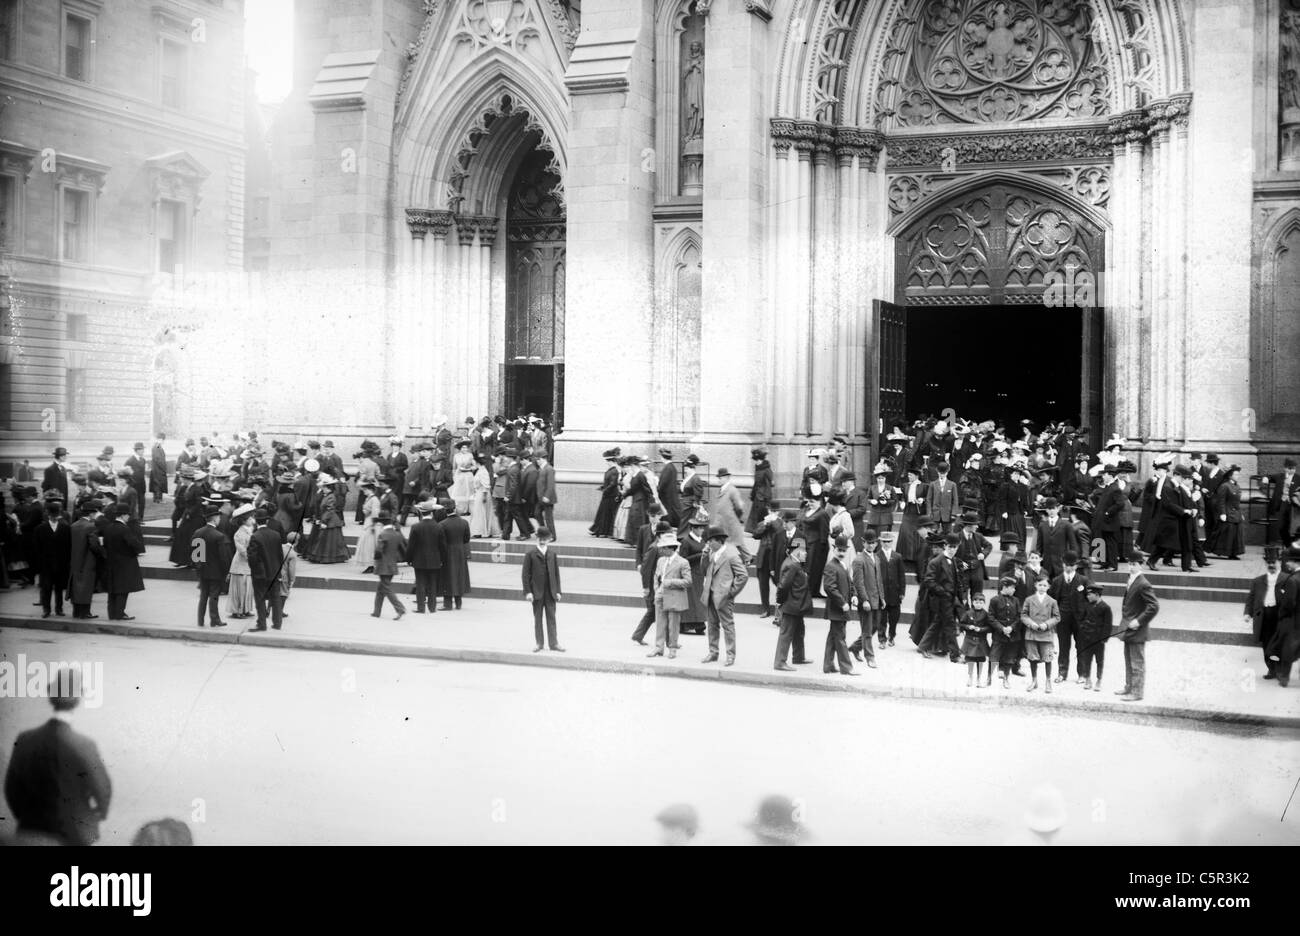 Laissant la Cathédrale St Patrick, après Pâques, 5e Avenue, New York City, vers 1900 Banque D'Images